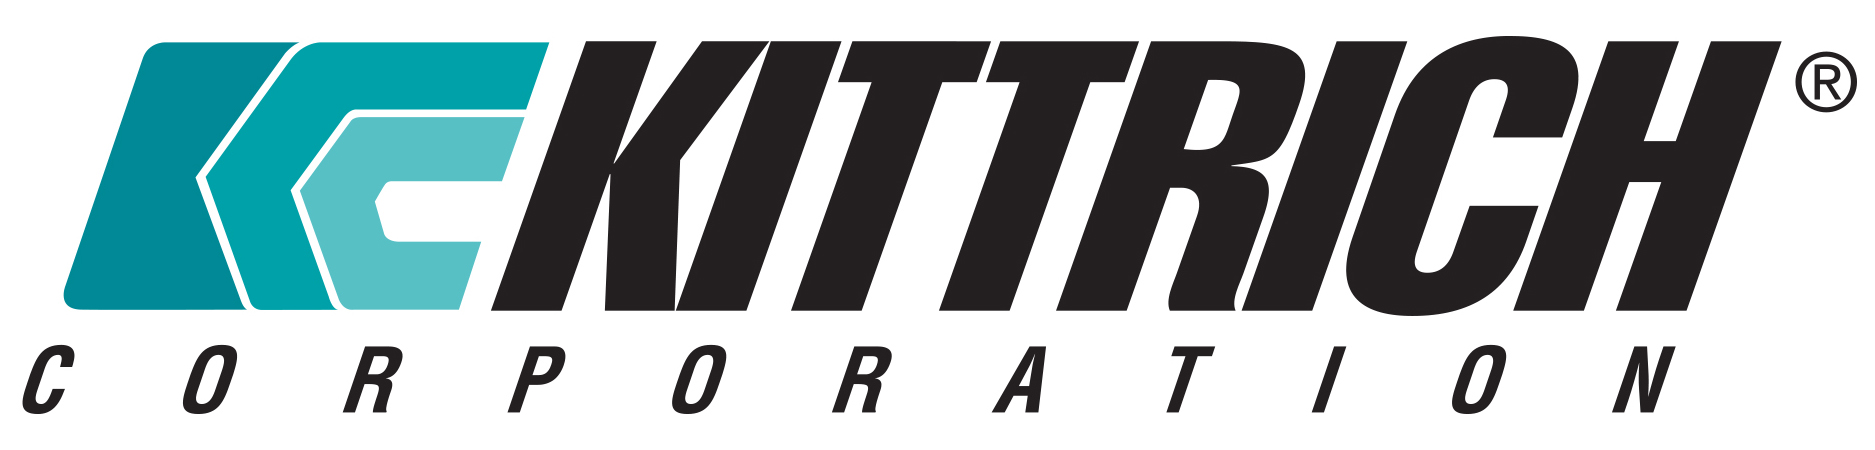 Kittrich Corporation